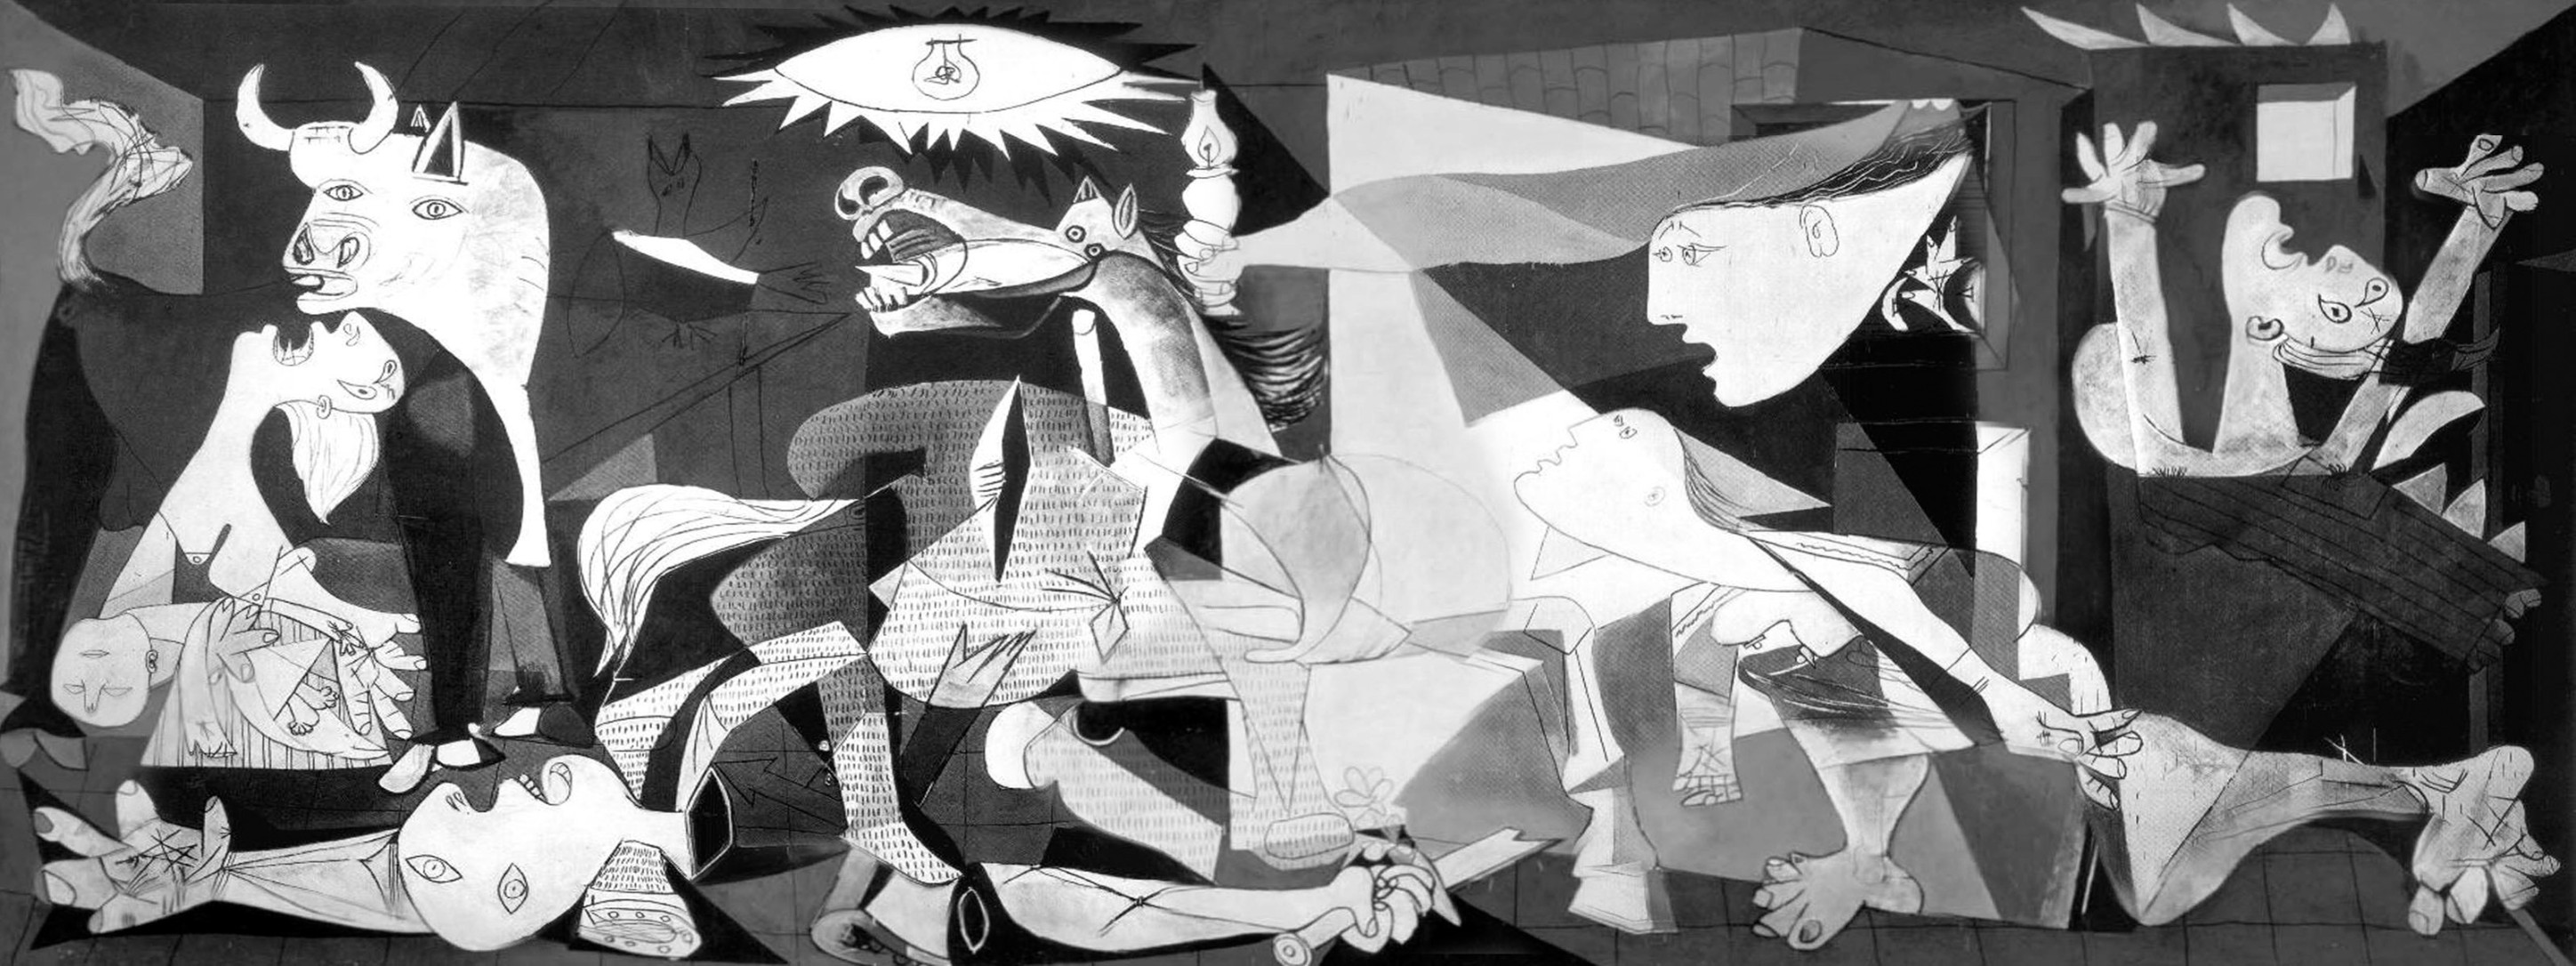 064-Guernica-Picasso